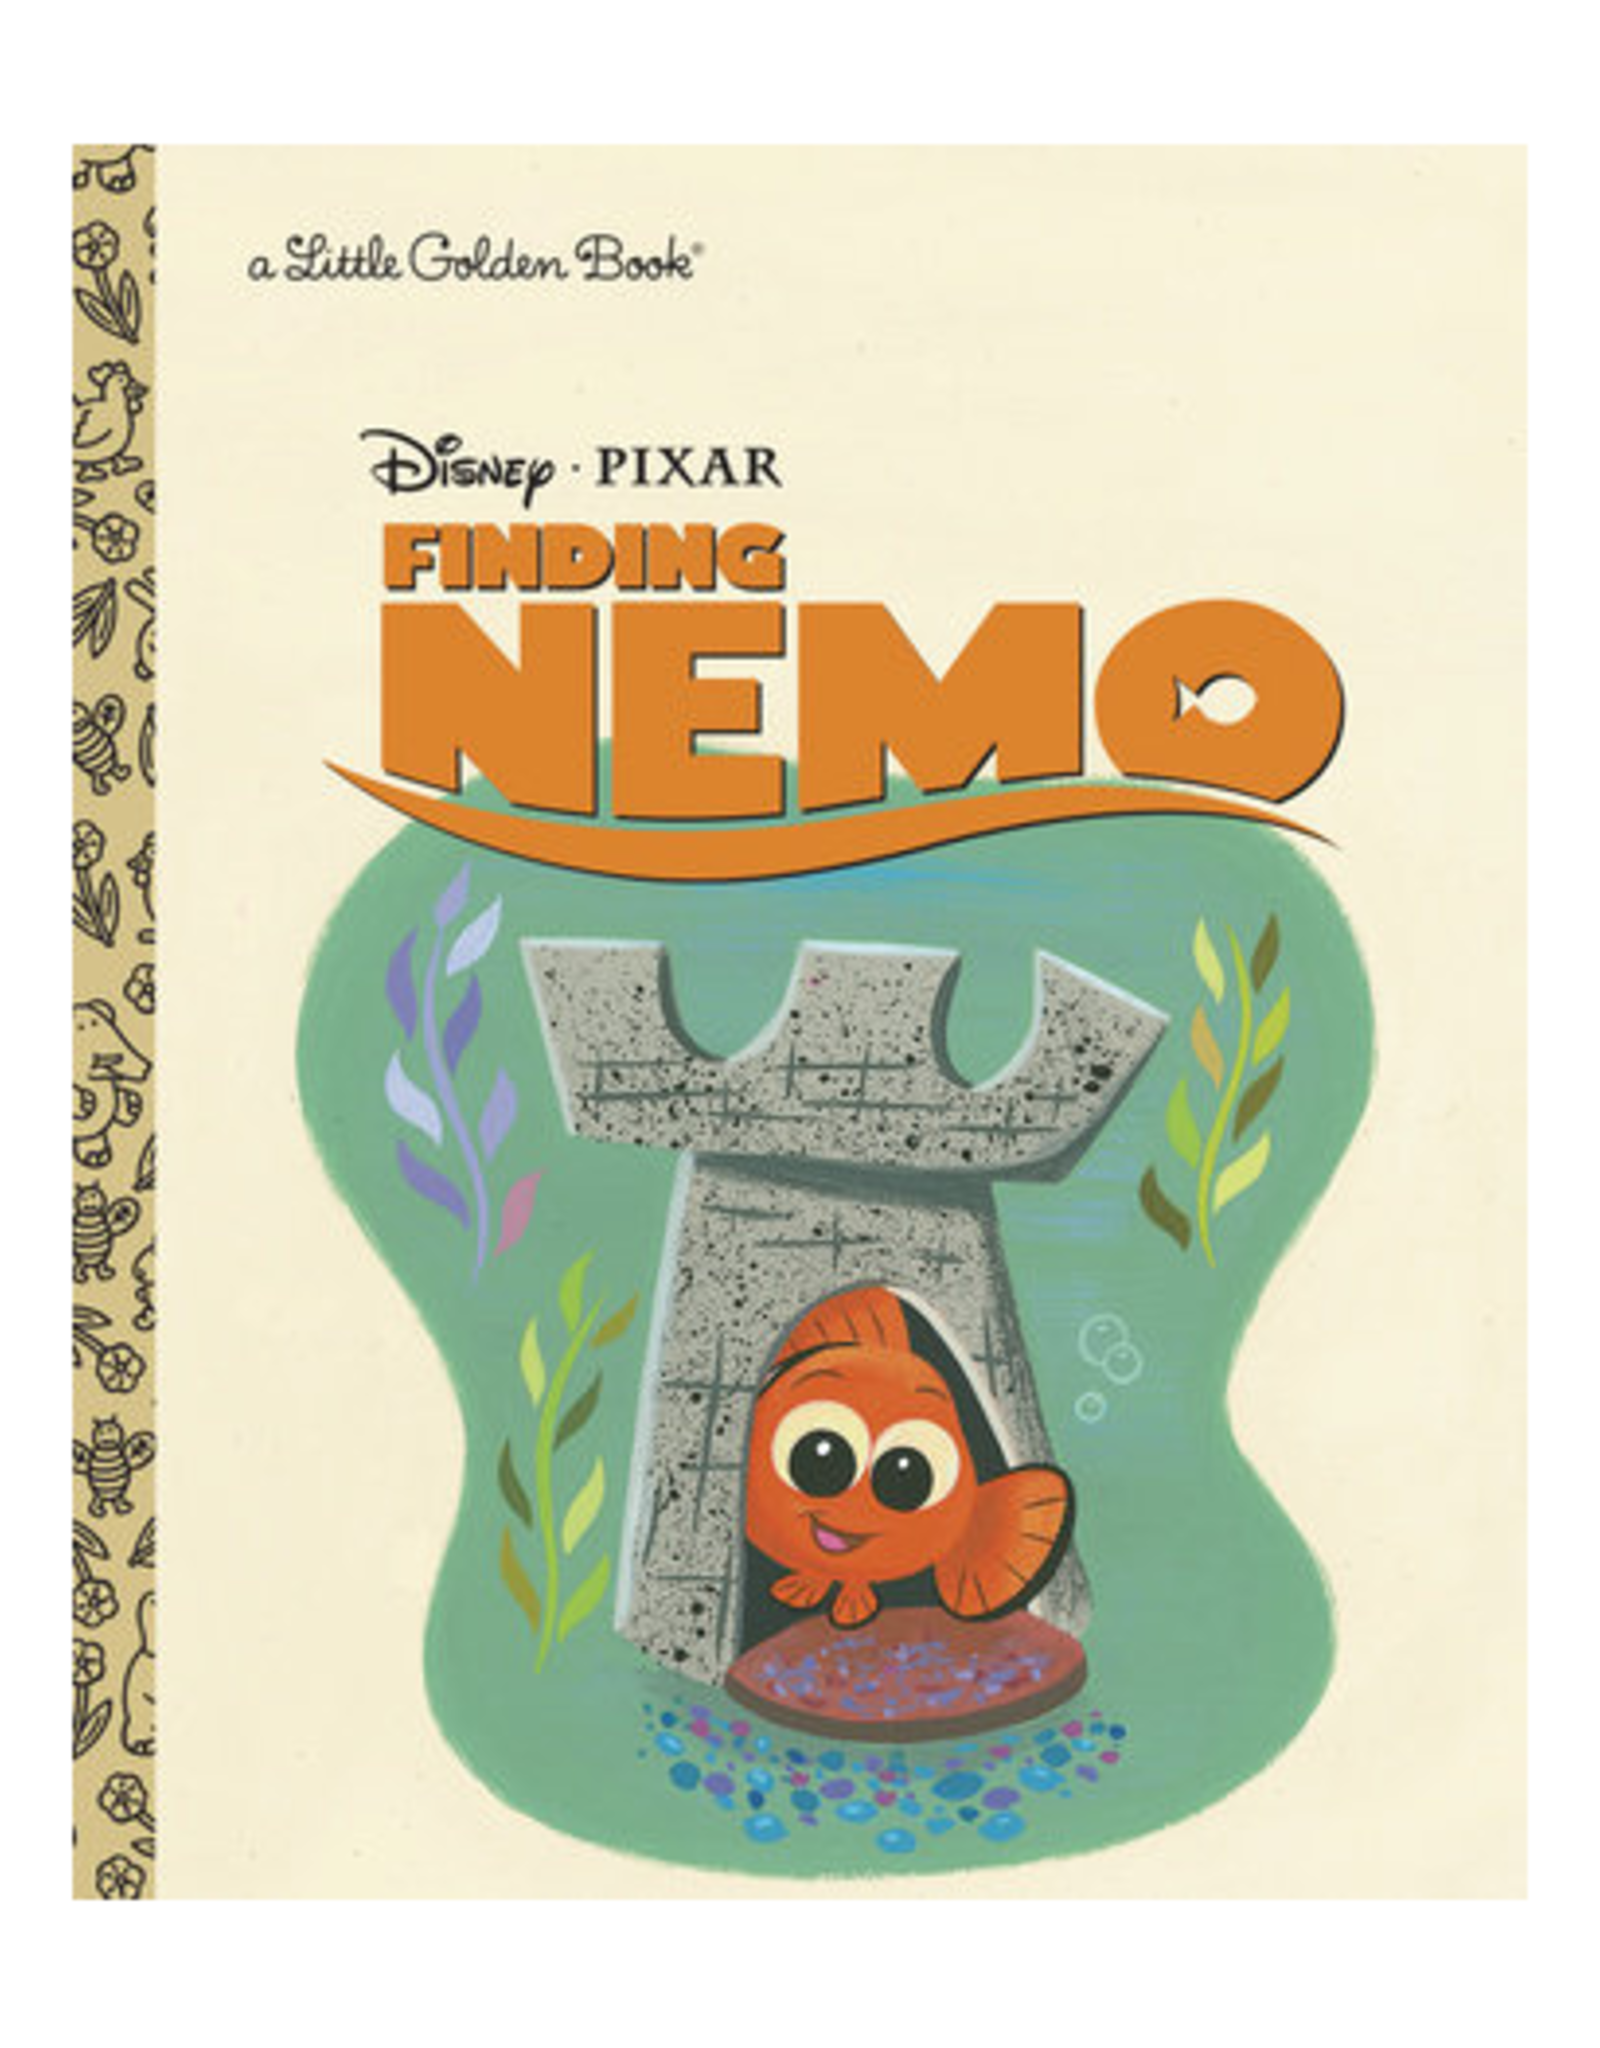 Little Golden Books Little Golden Book - Disney - Finding Nemo